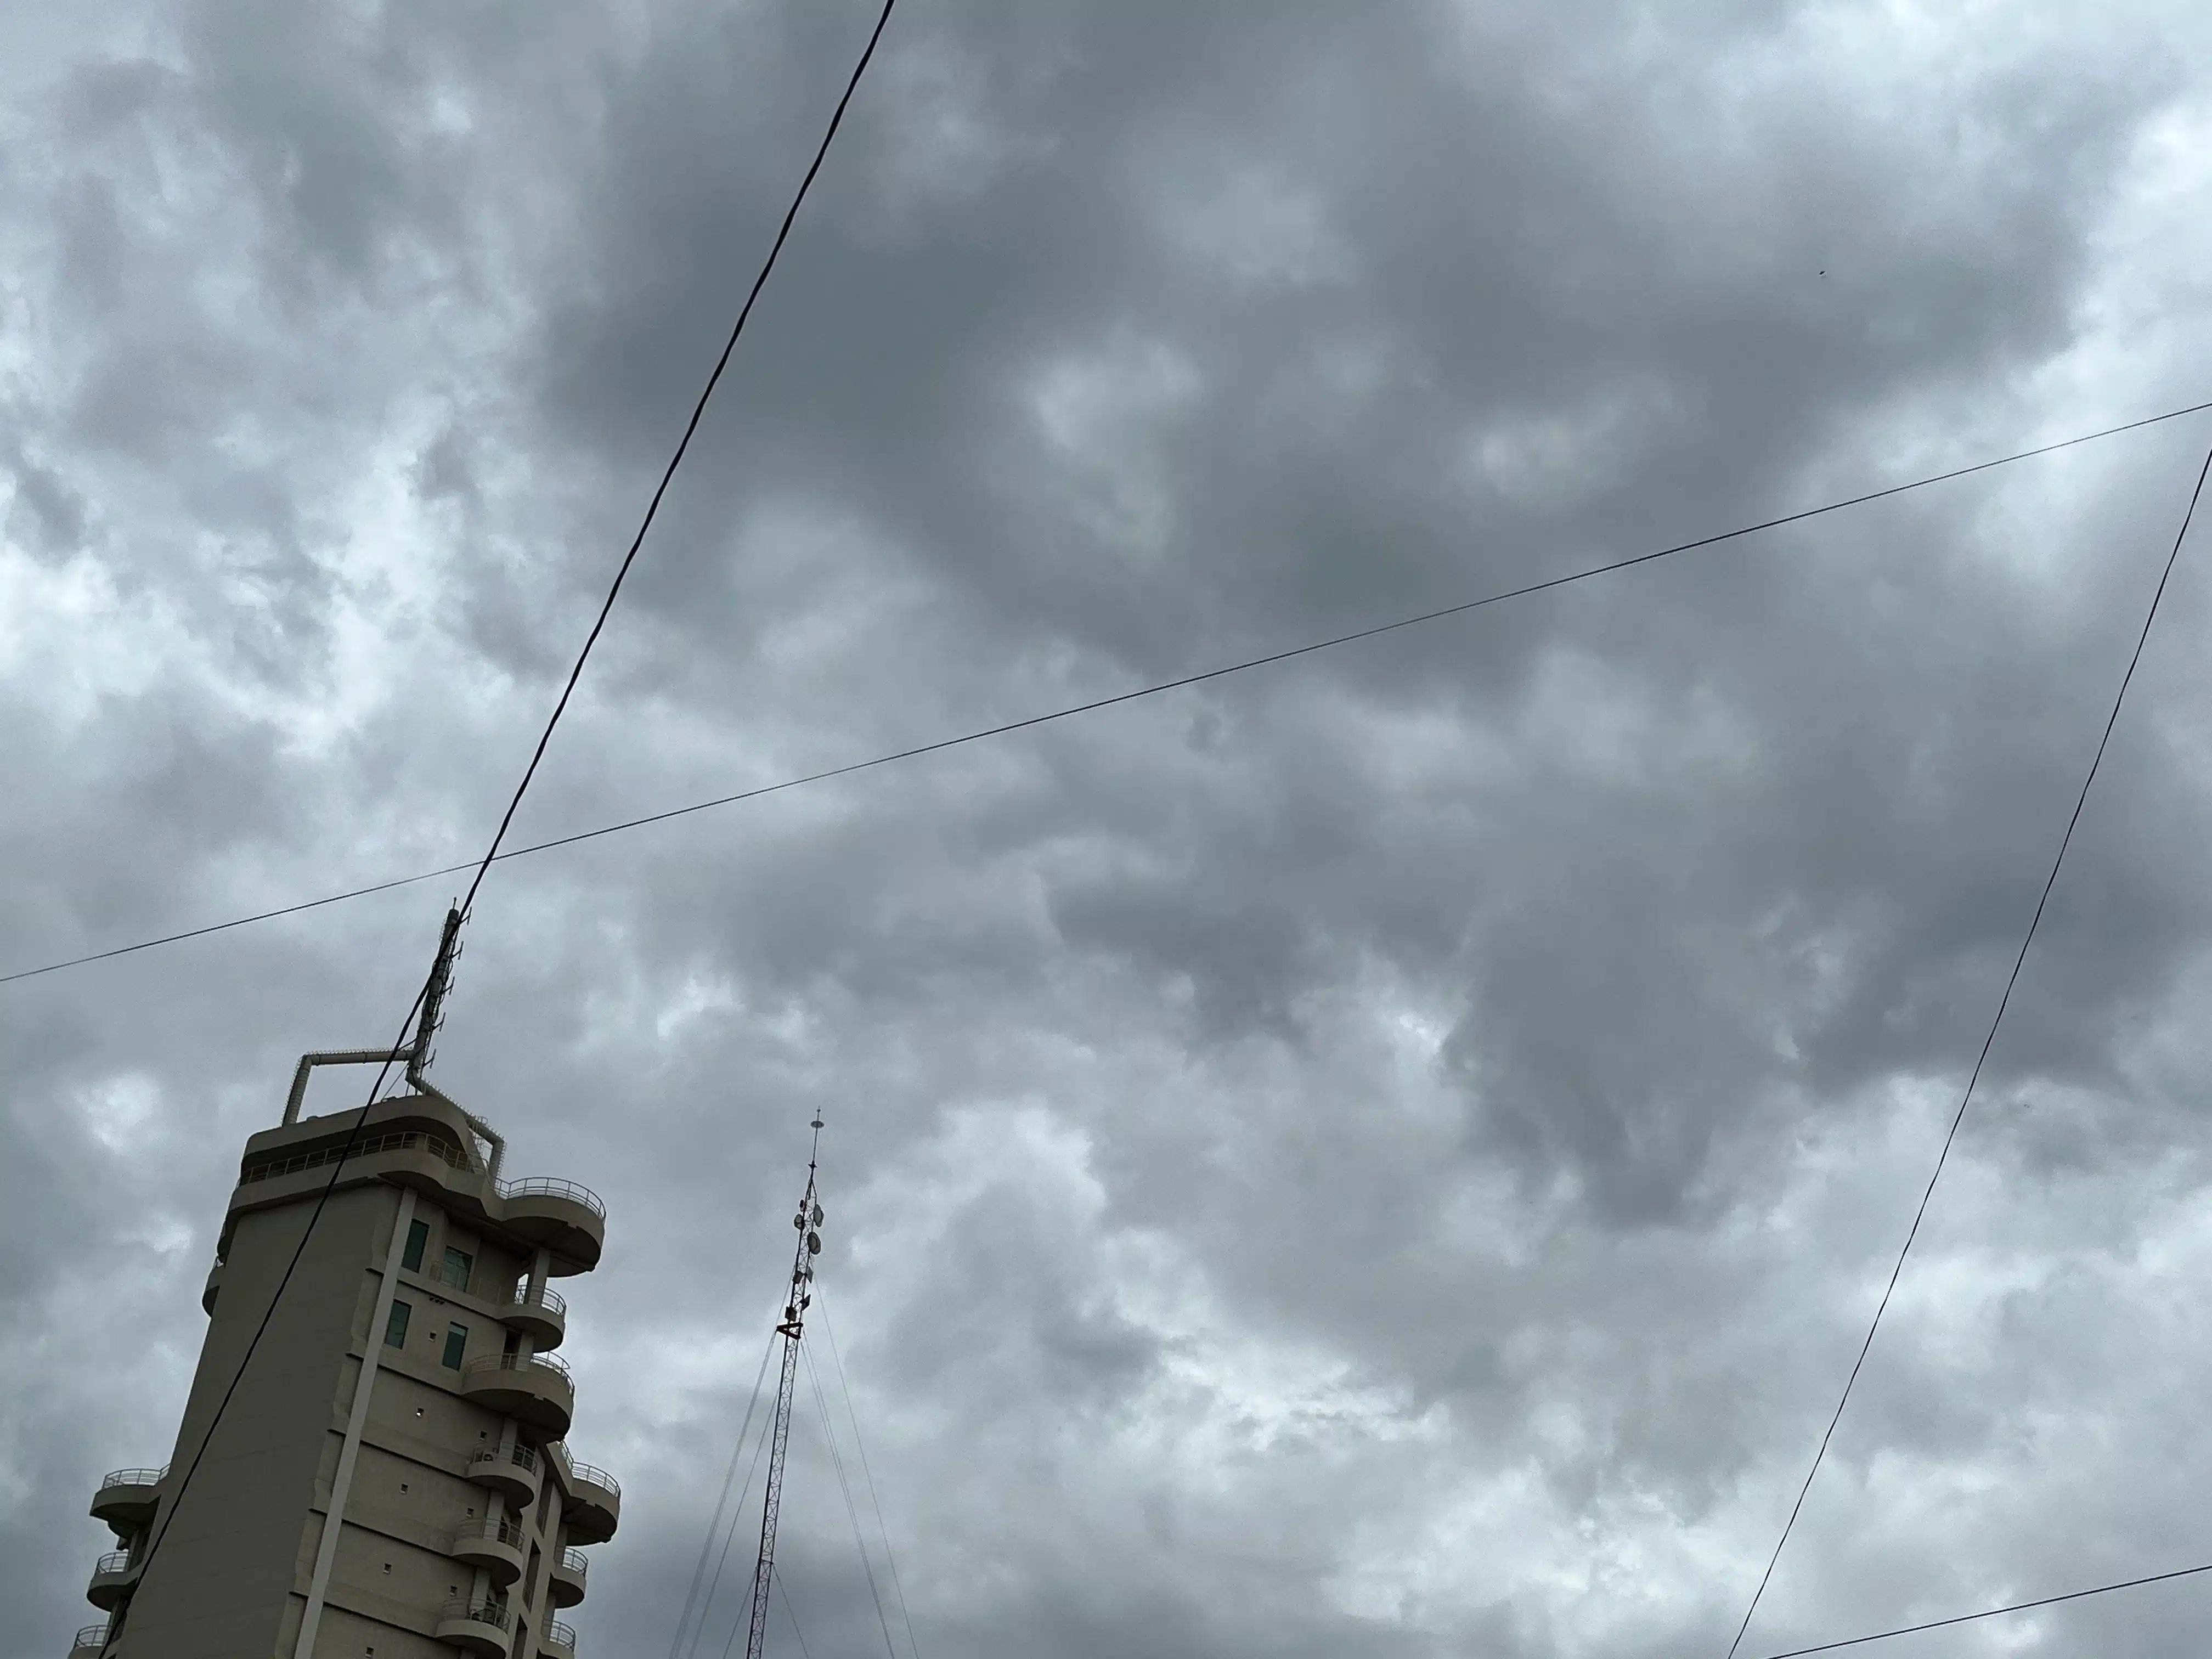 Cielo nuboso y lloviznas ligeras se apoderan de Culiacán la tarde de este jueves